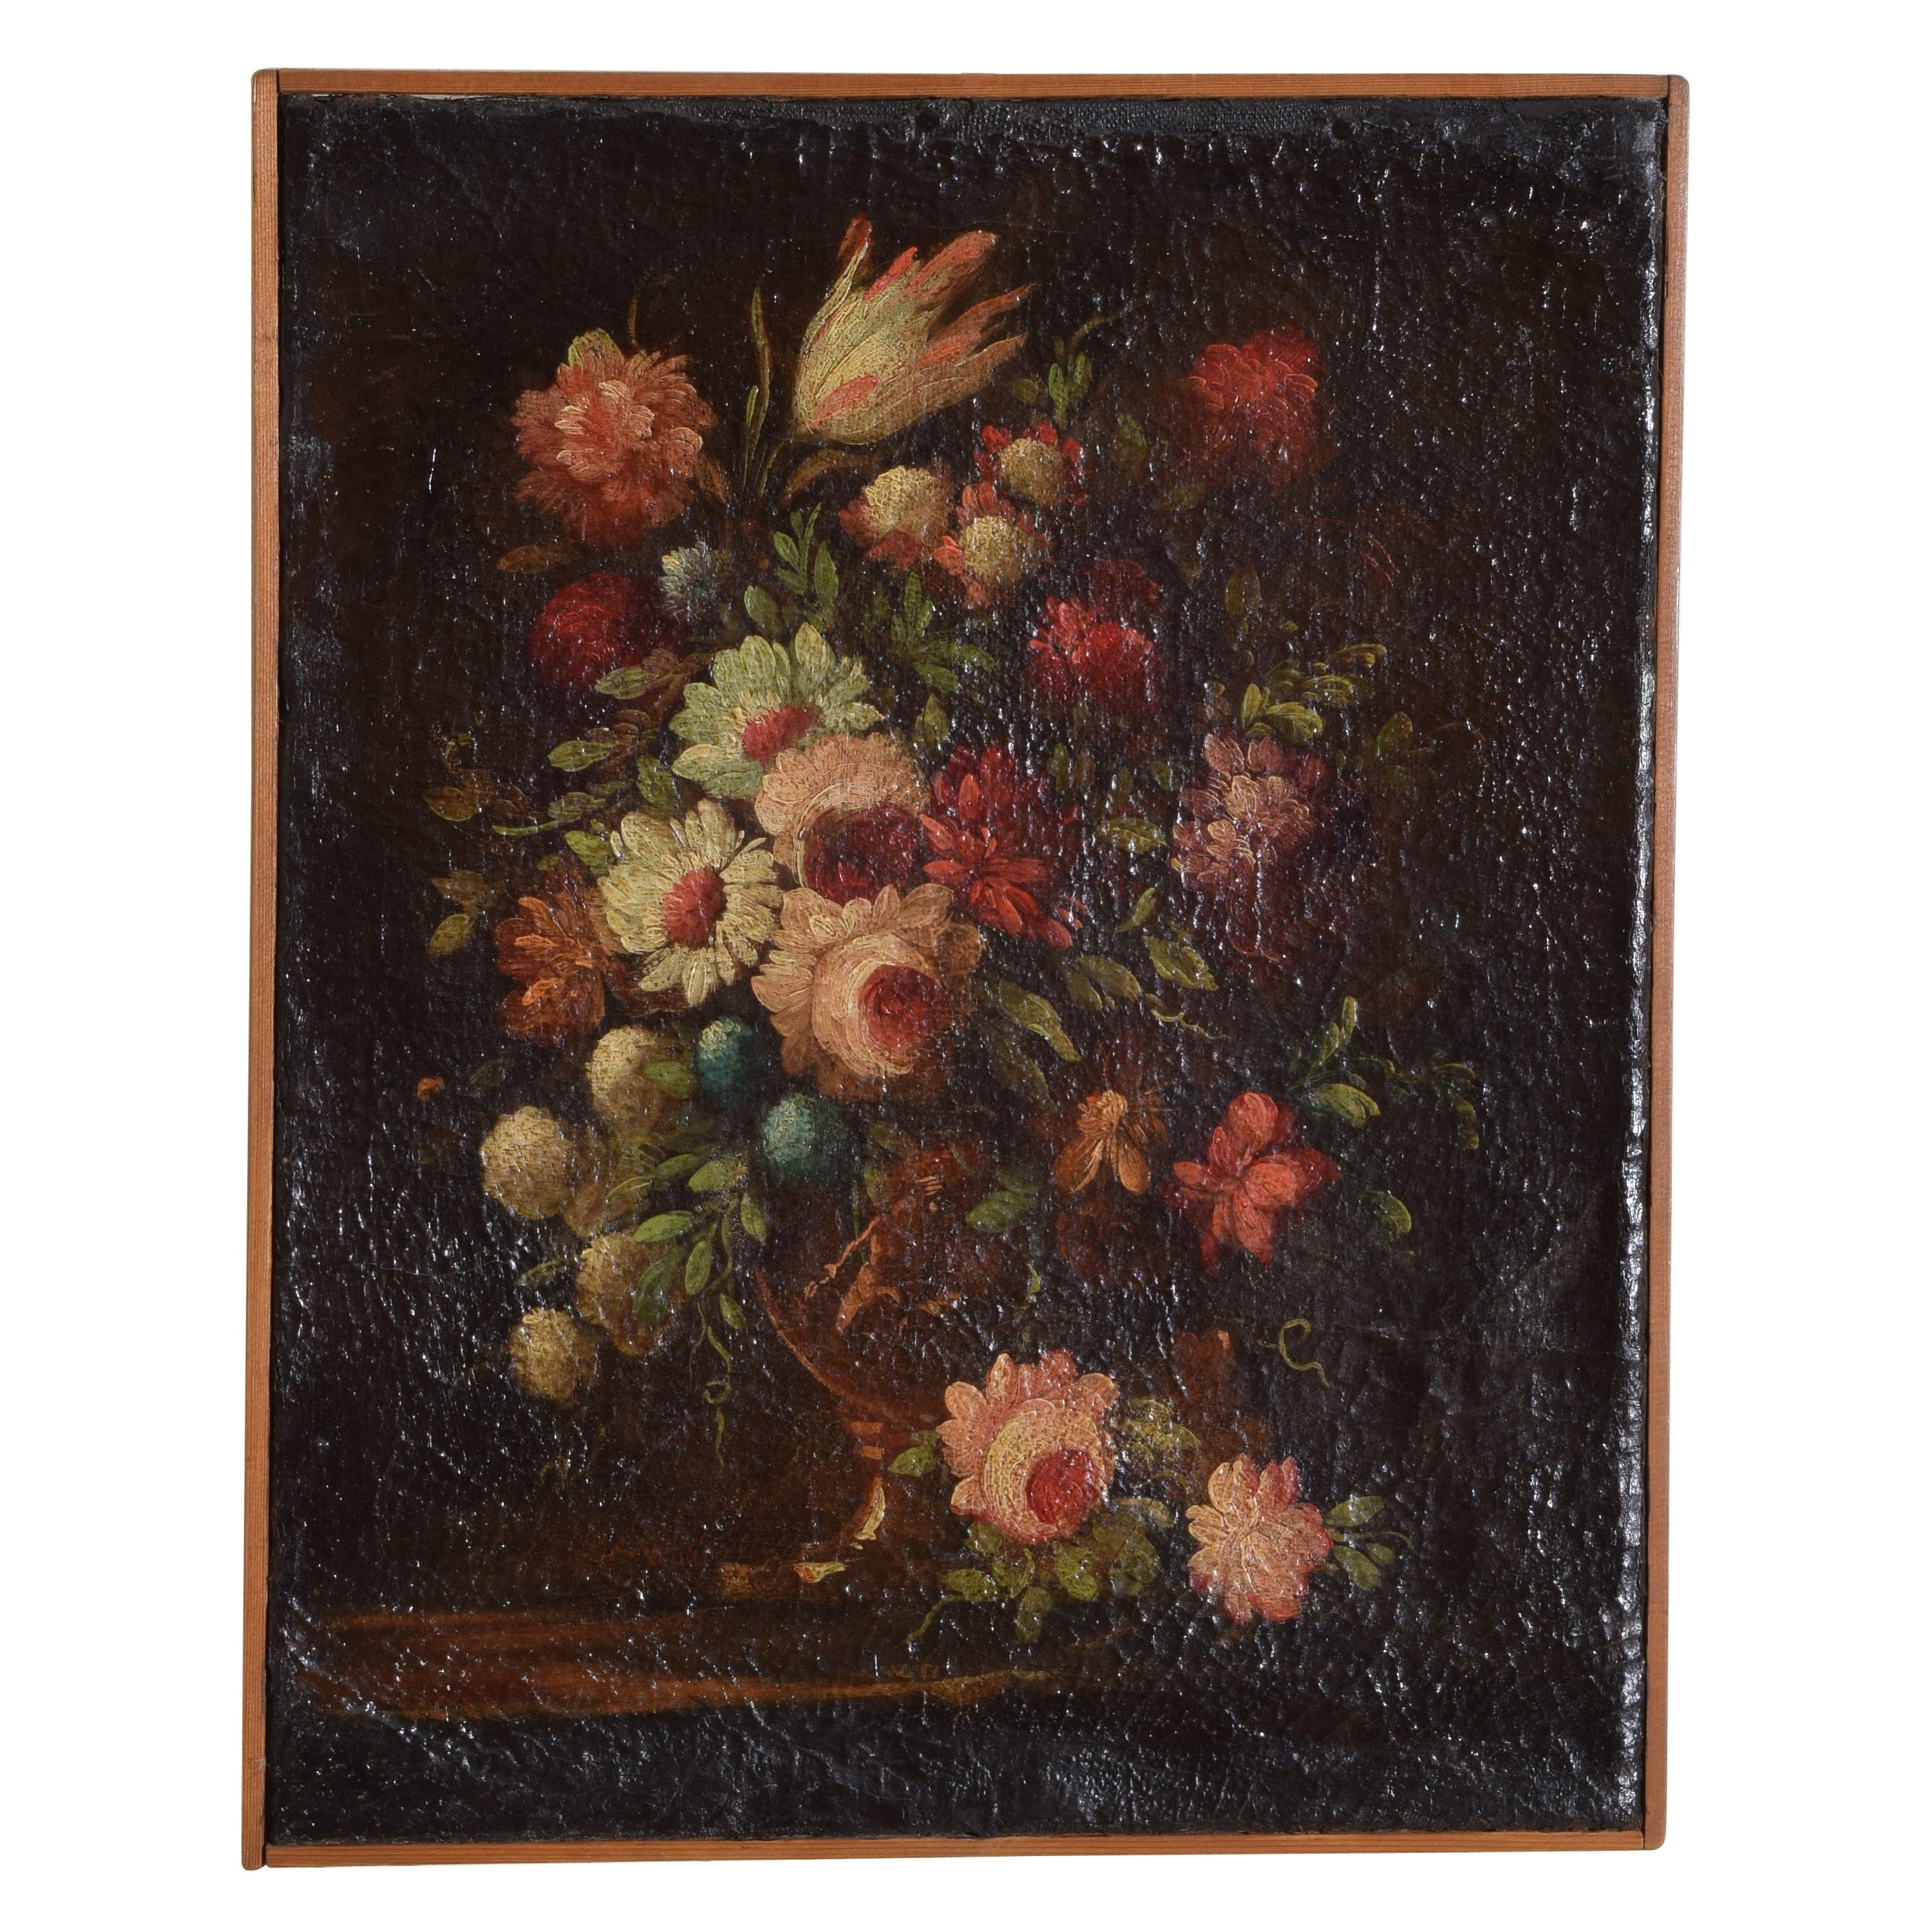 Italie, École génoise, Huile sur toile, Nature morte florale, milieu du XVIIIe siècle